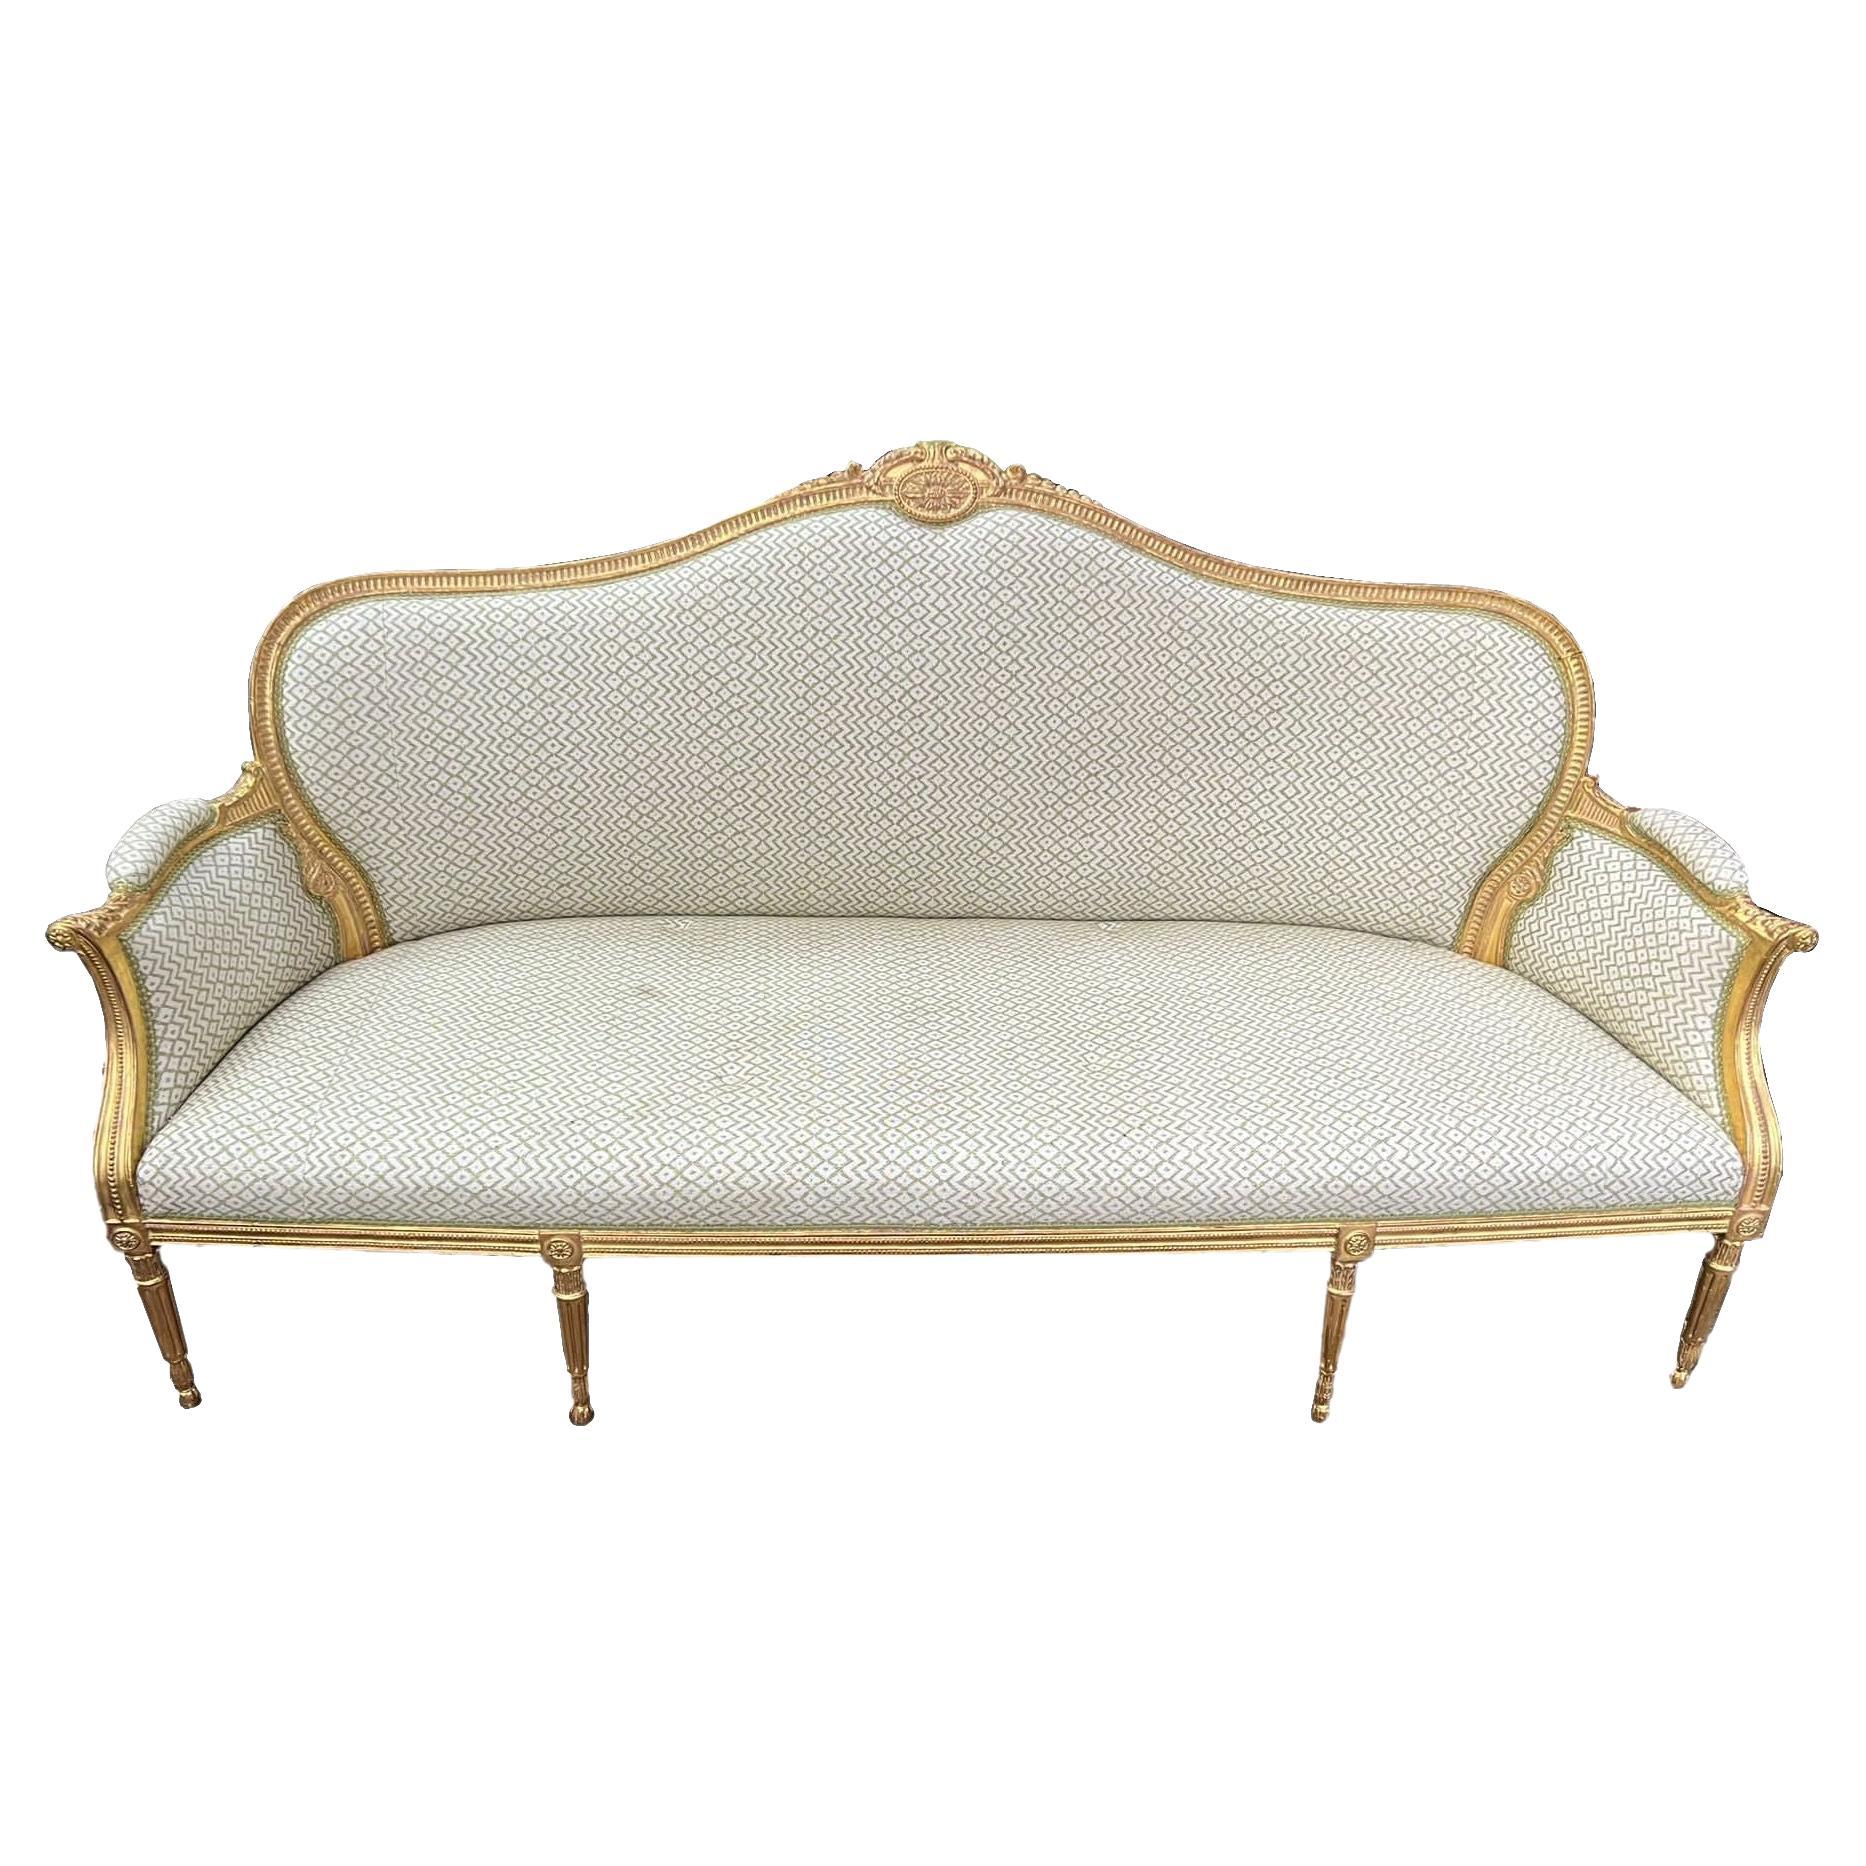 Grand canapé en bois doré de style Louis XVI, vers 1900